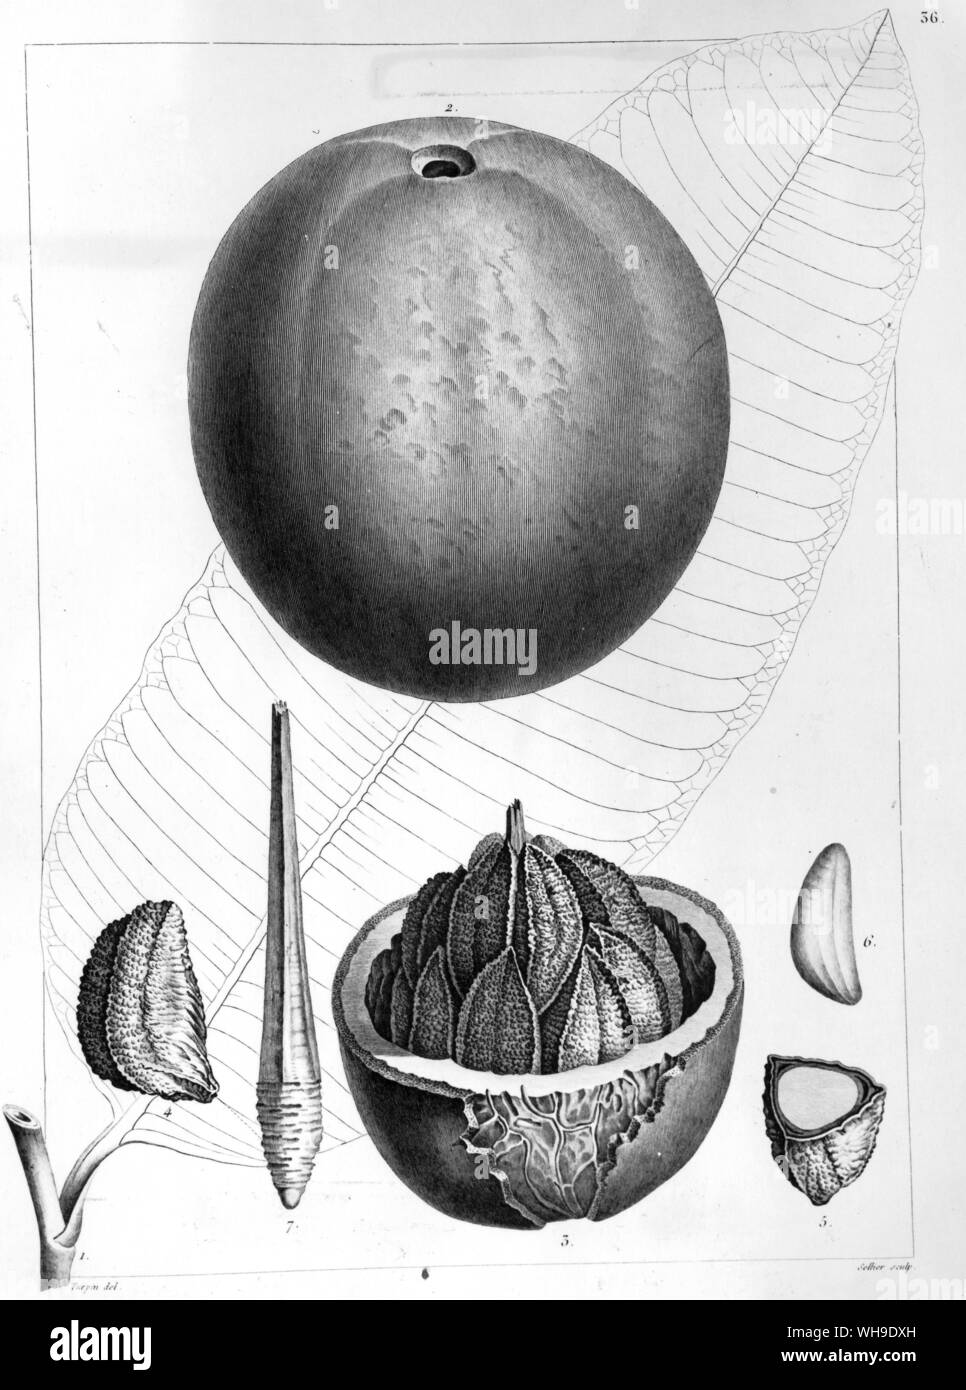 La noix du Brésil, Bertholletia excelsa, de plantes equinoxiales, nommé par Humboldt pour son ami Comte Claude Louis Berthollet, chimiste français et hôte de salon Banque D'Images